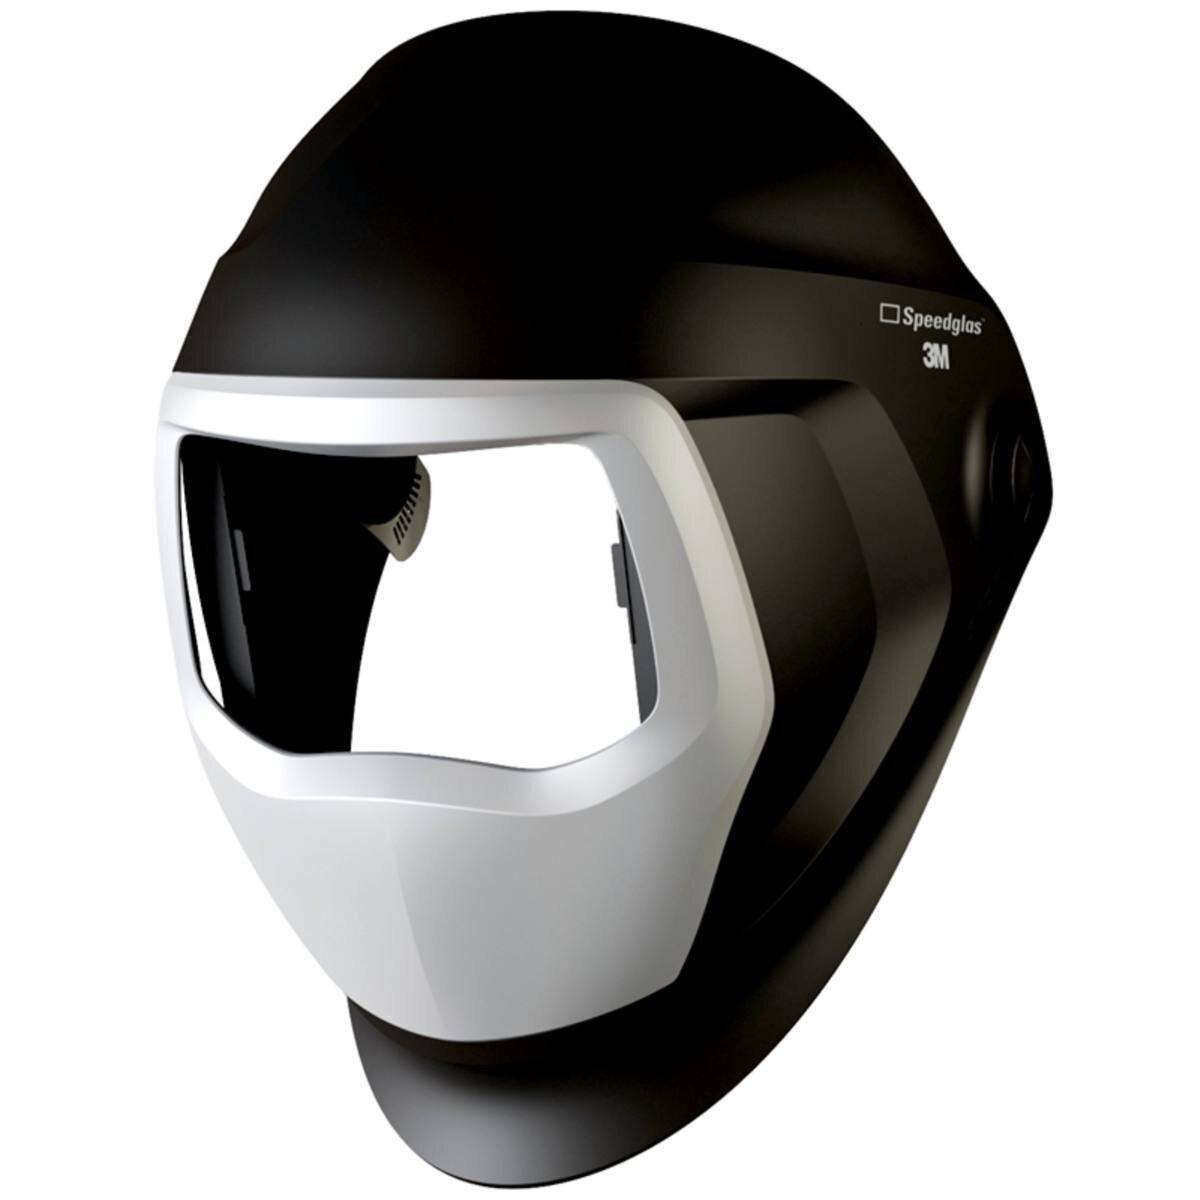 3M Speedglas Lasmasker 9100 met zijruit, zonder hoofdband, zonder ADF automatisch lasfilter #501890